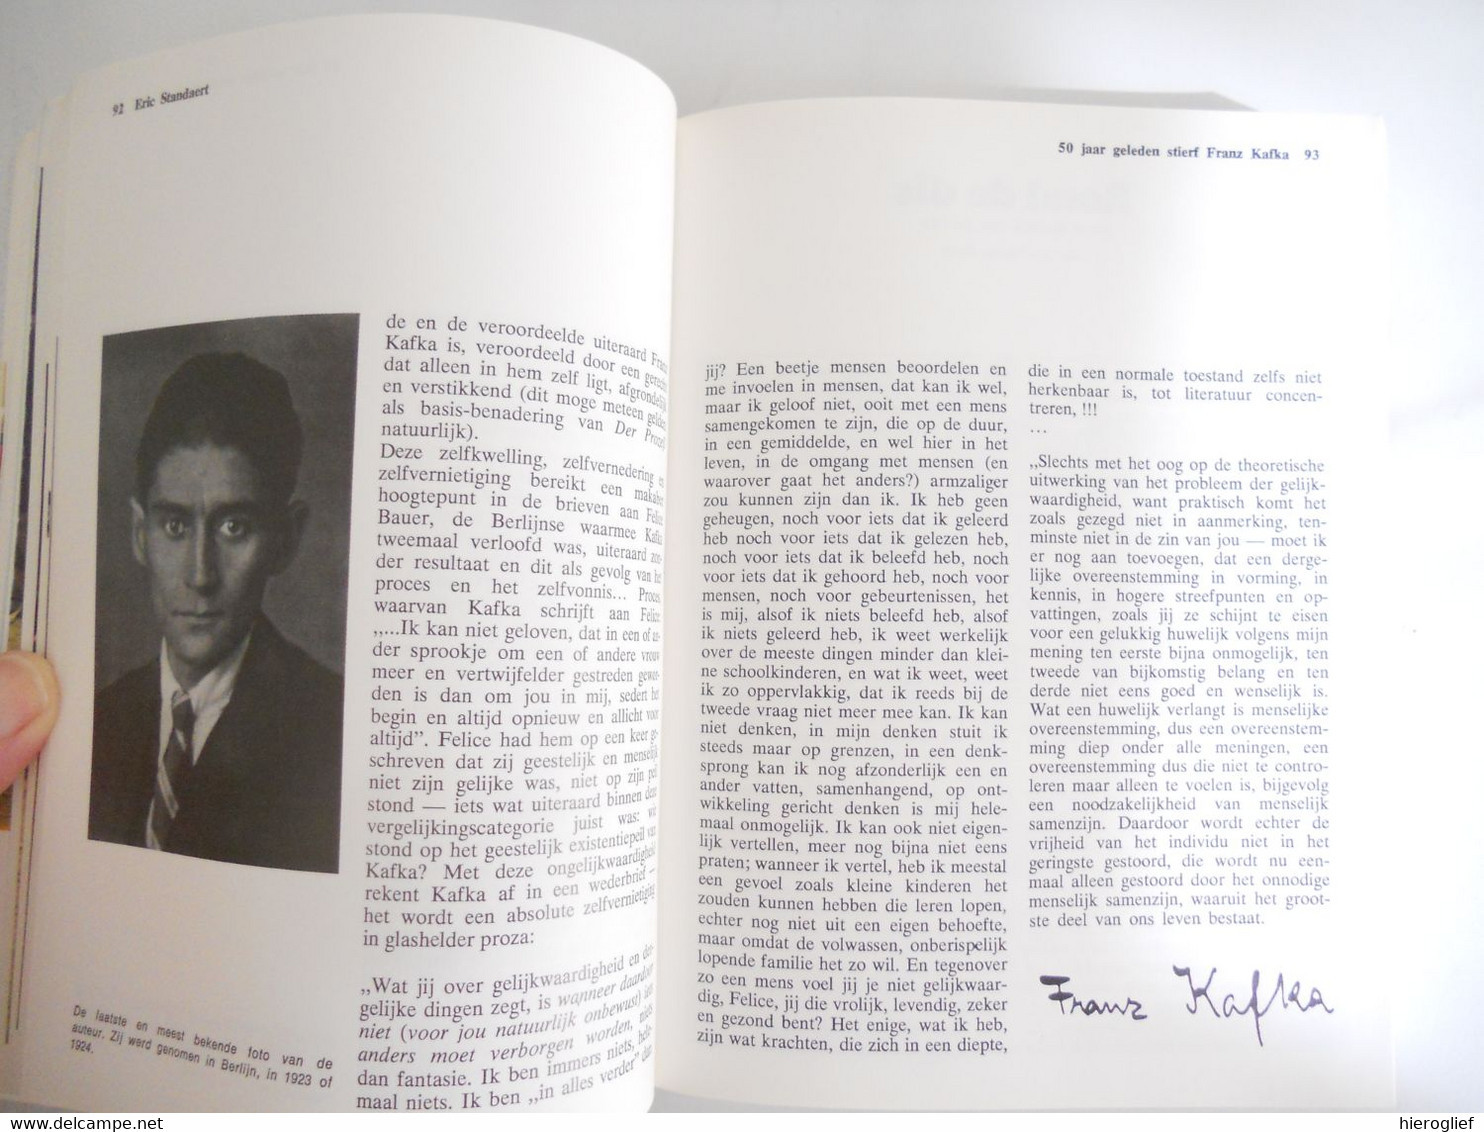 SNOECKS 74        jaarboek snoeck's fotografie film architectuur literatuur reportages cultuur 1974 gent